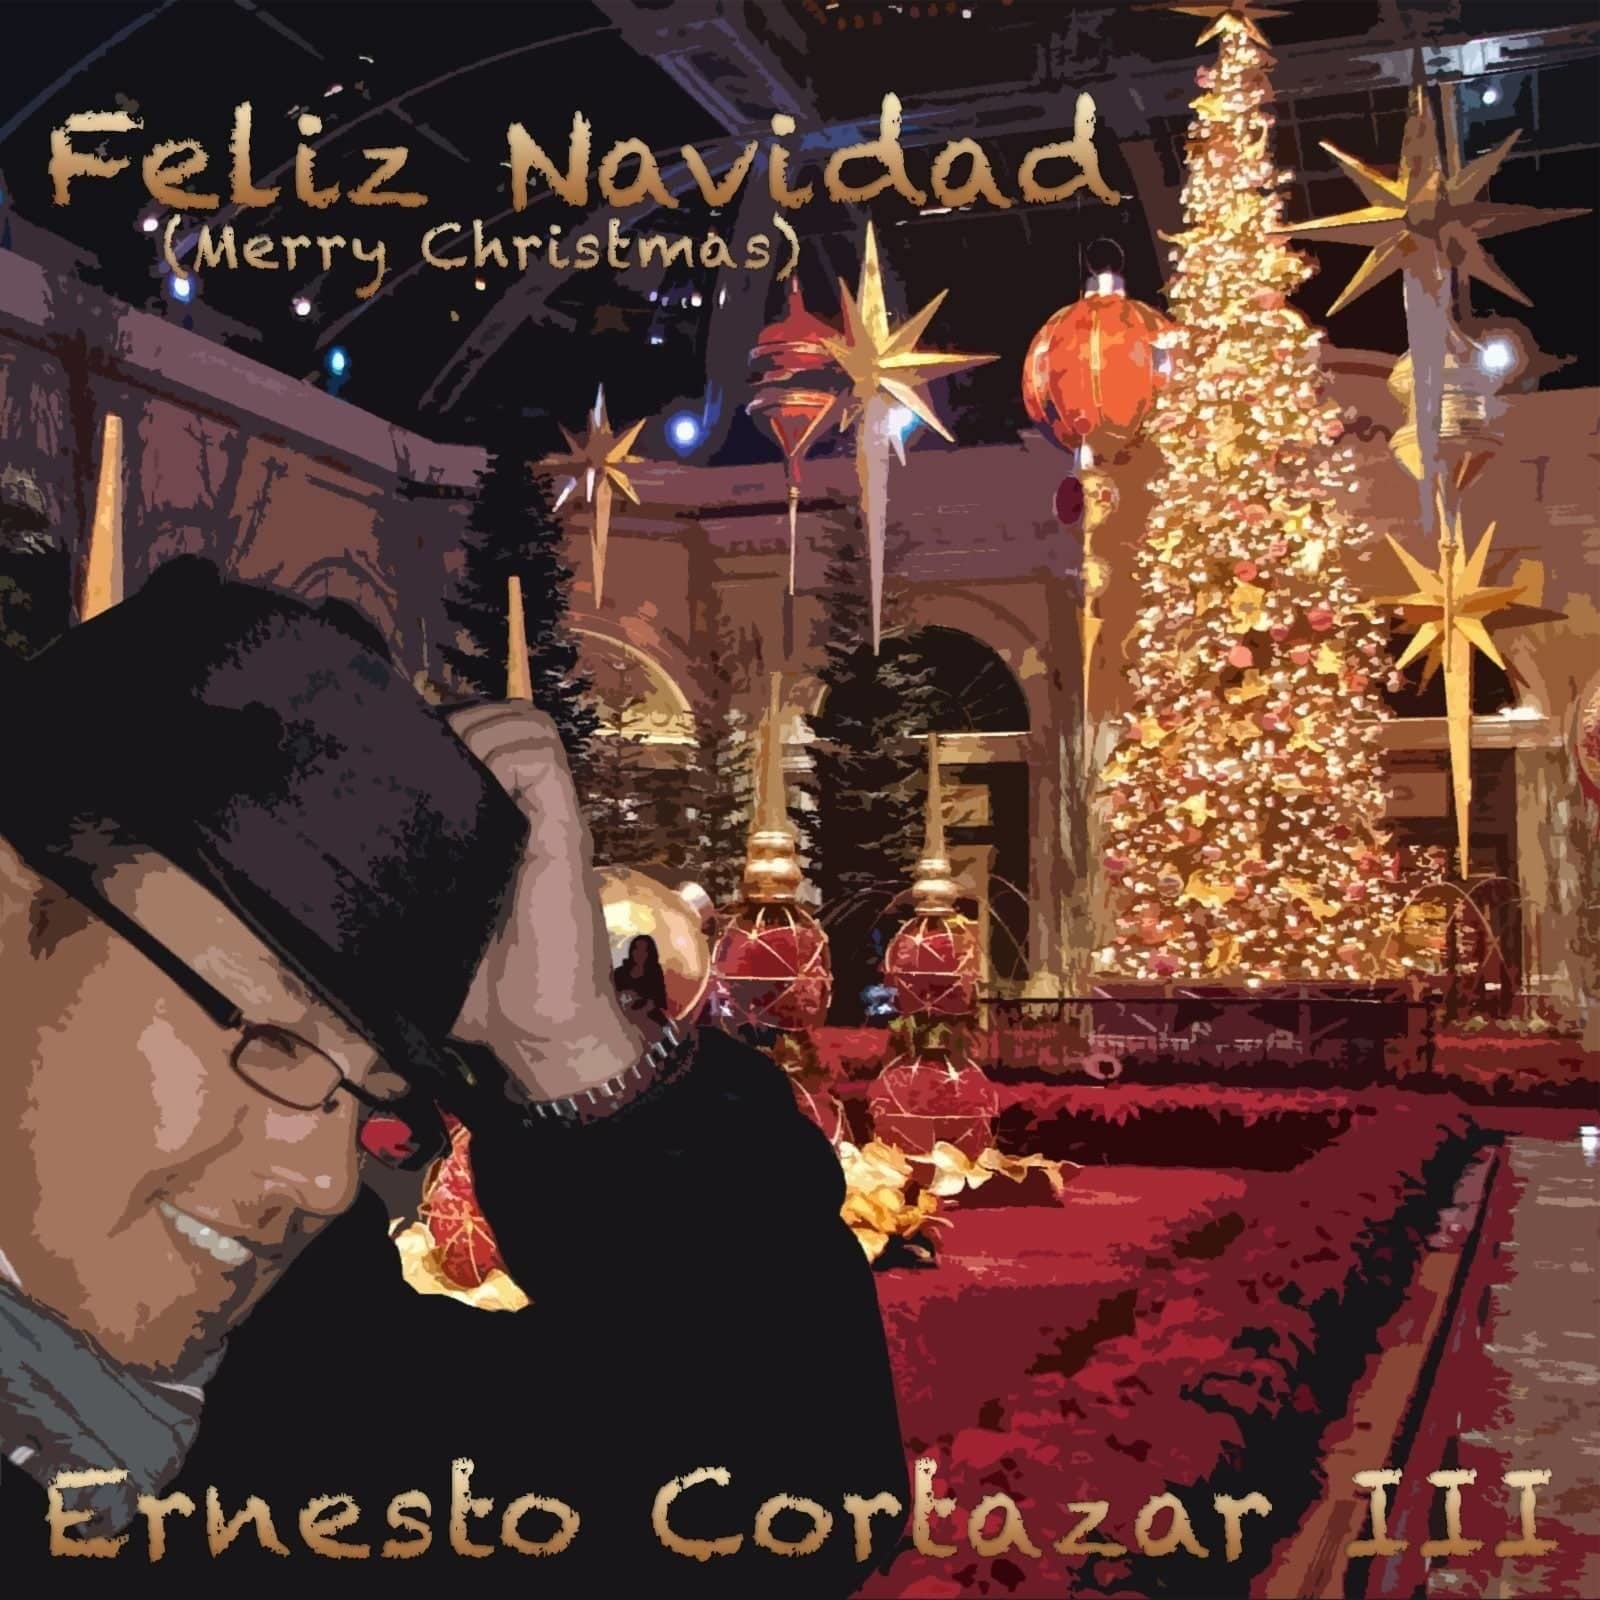 Feliz Navidad (Merry Christmas) MP3 Album Performed by Ernesto Cortazar III